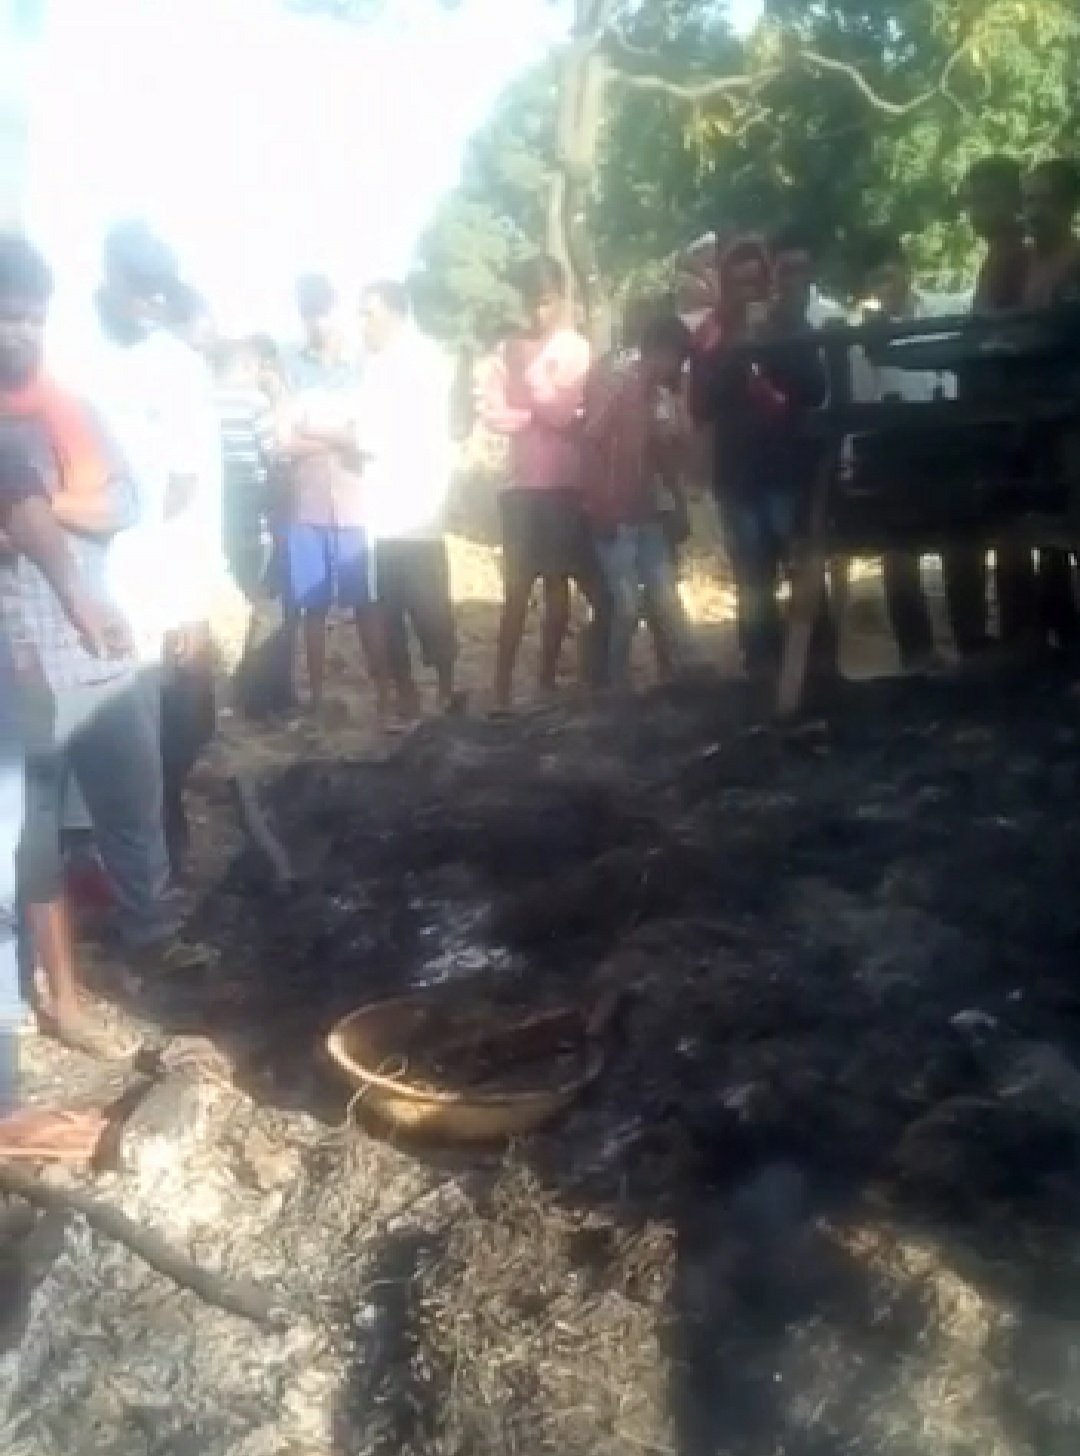 बेखौफ बदमाशों ने दलित किसान को जिंदा जला कर की निर्मम हत्या | New India Times